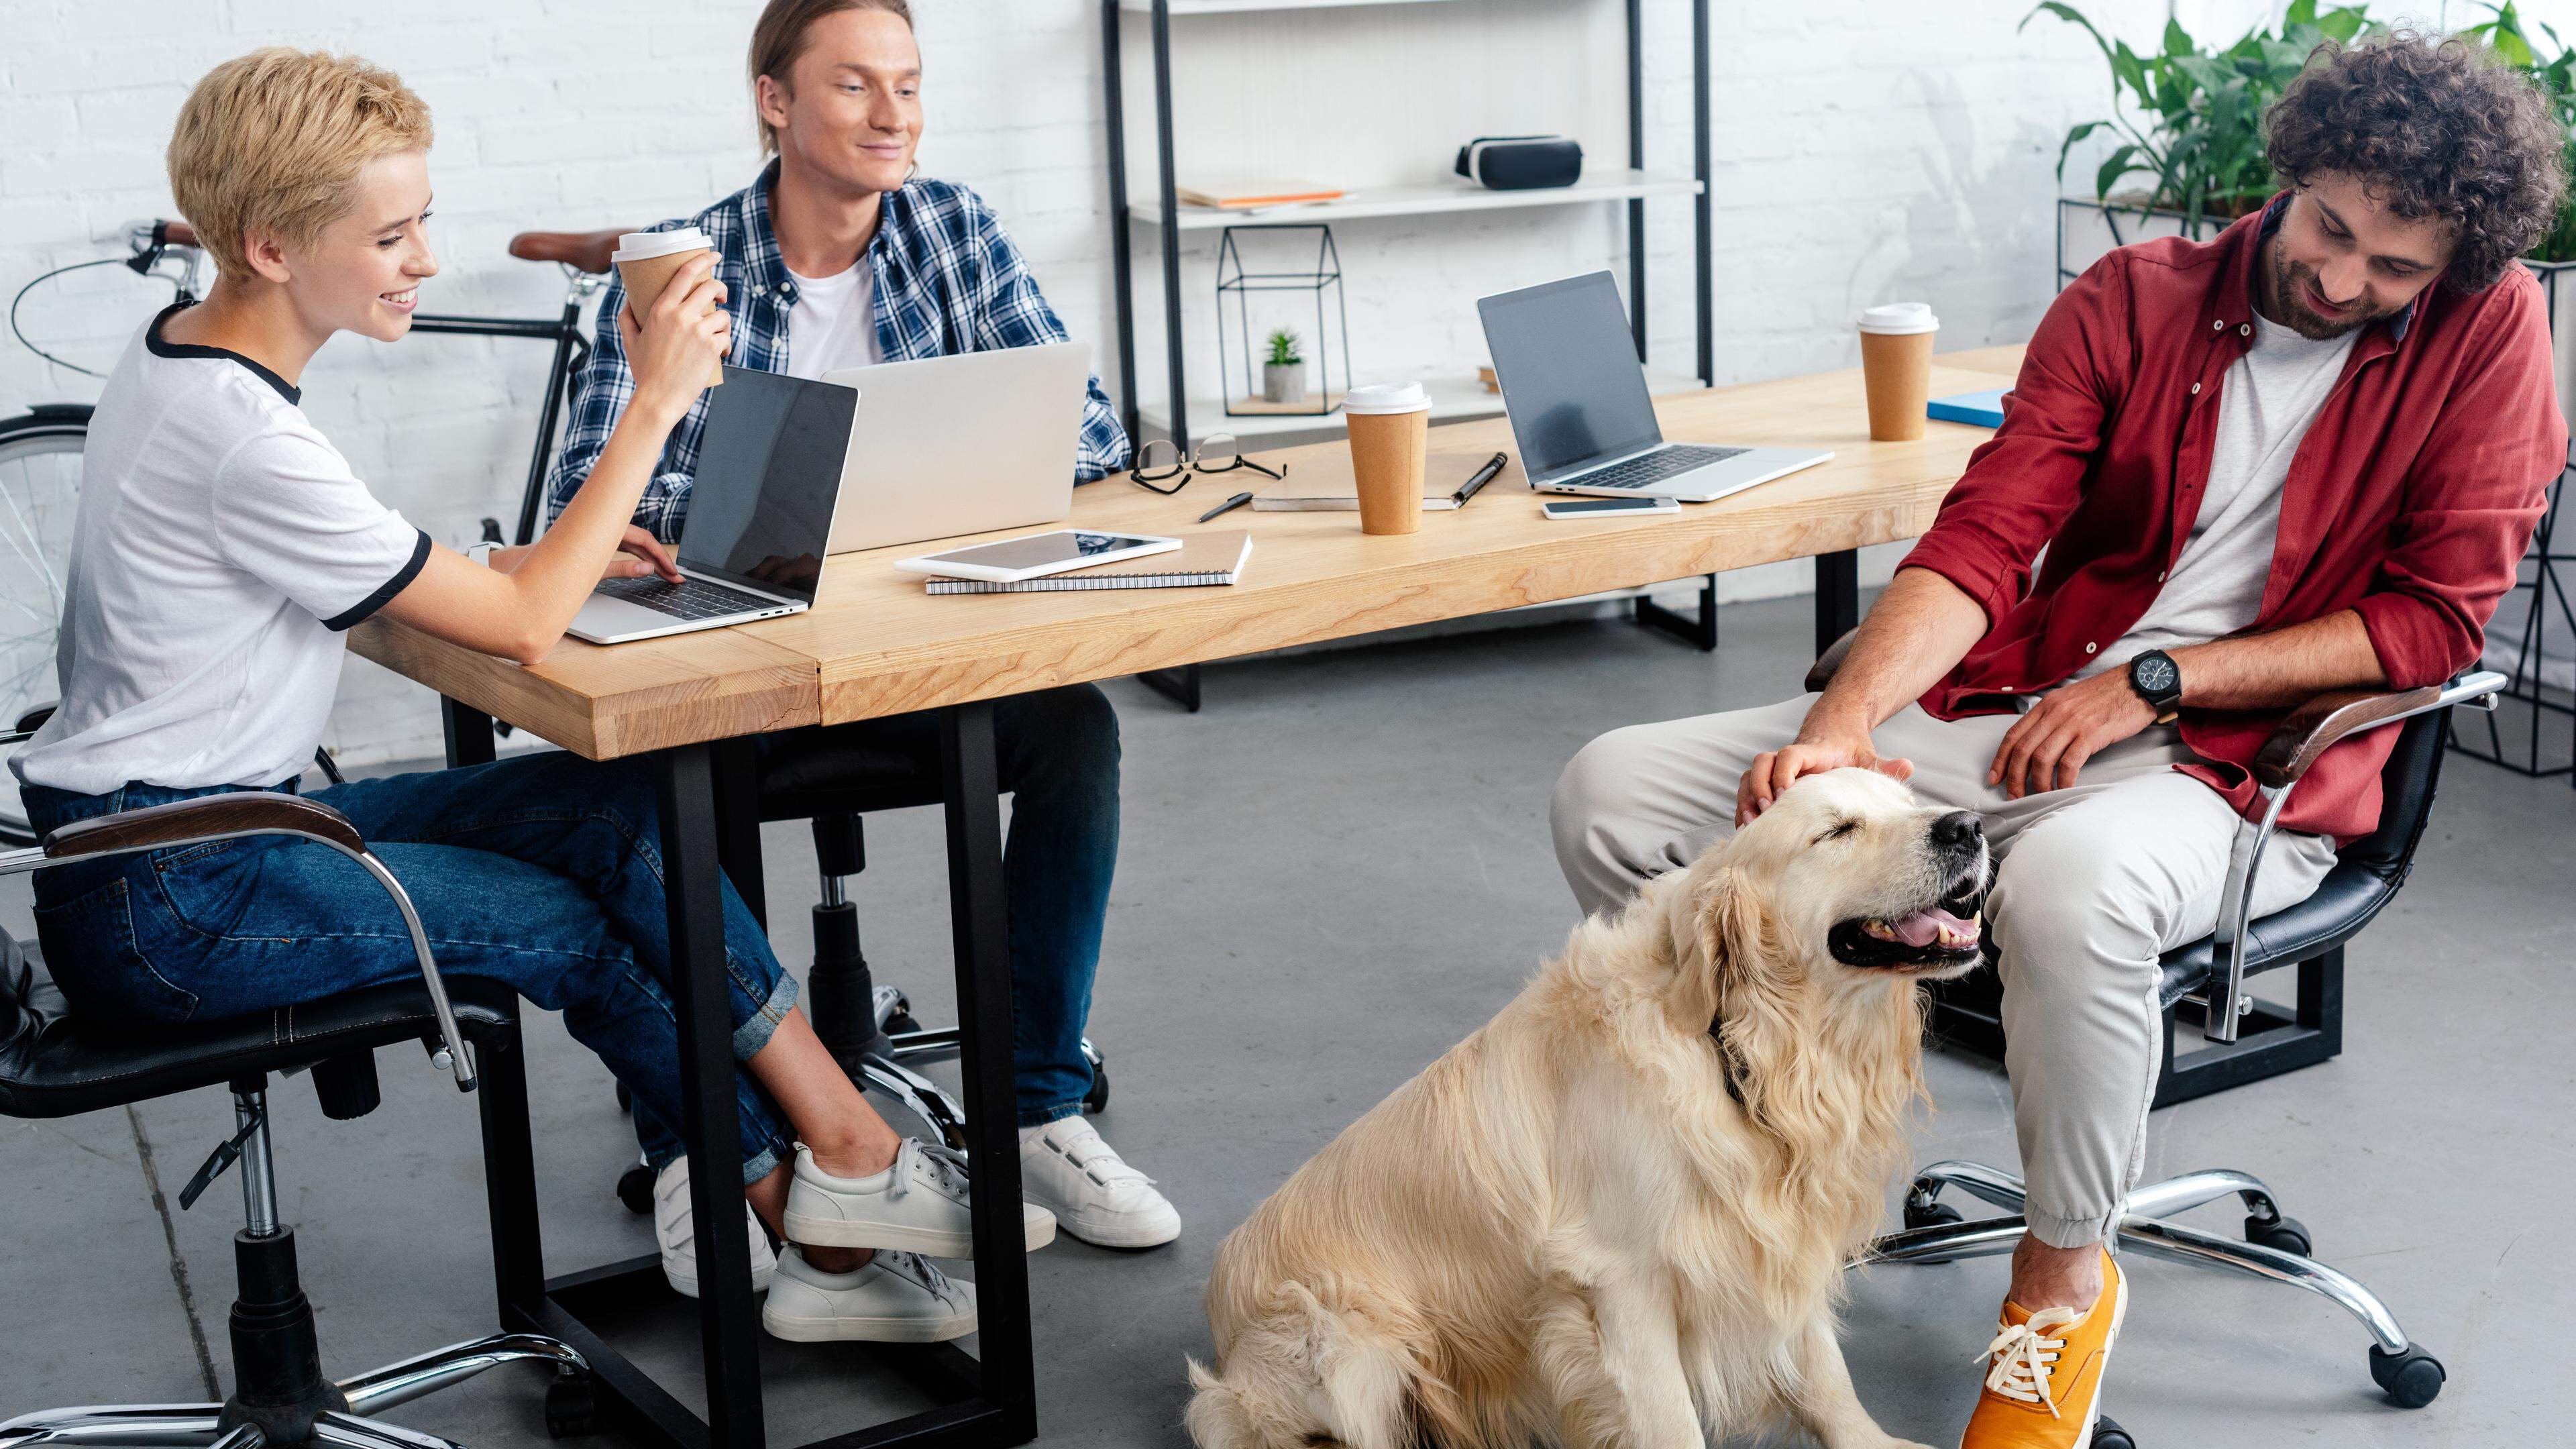 La présence d’un chien sur le lieu de travail peut améliorer l’ambiance dans l’open space, selon une étude.